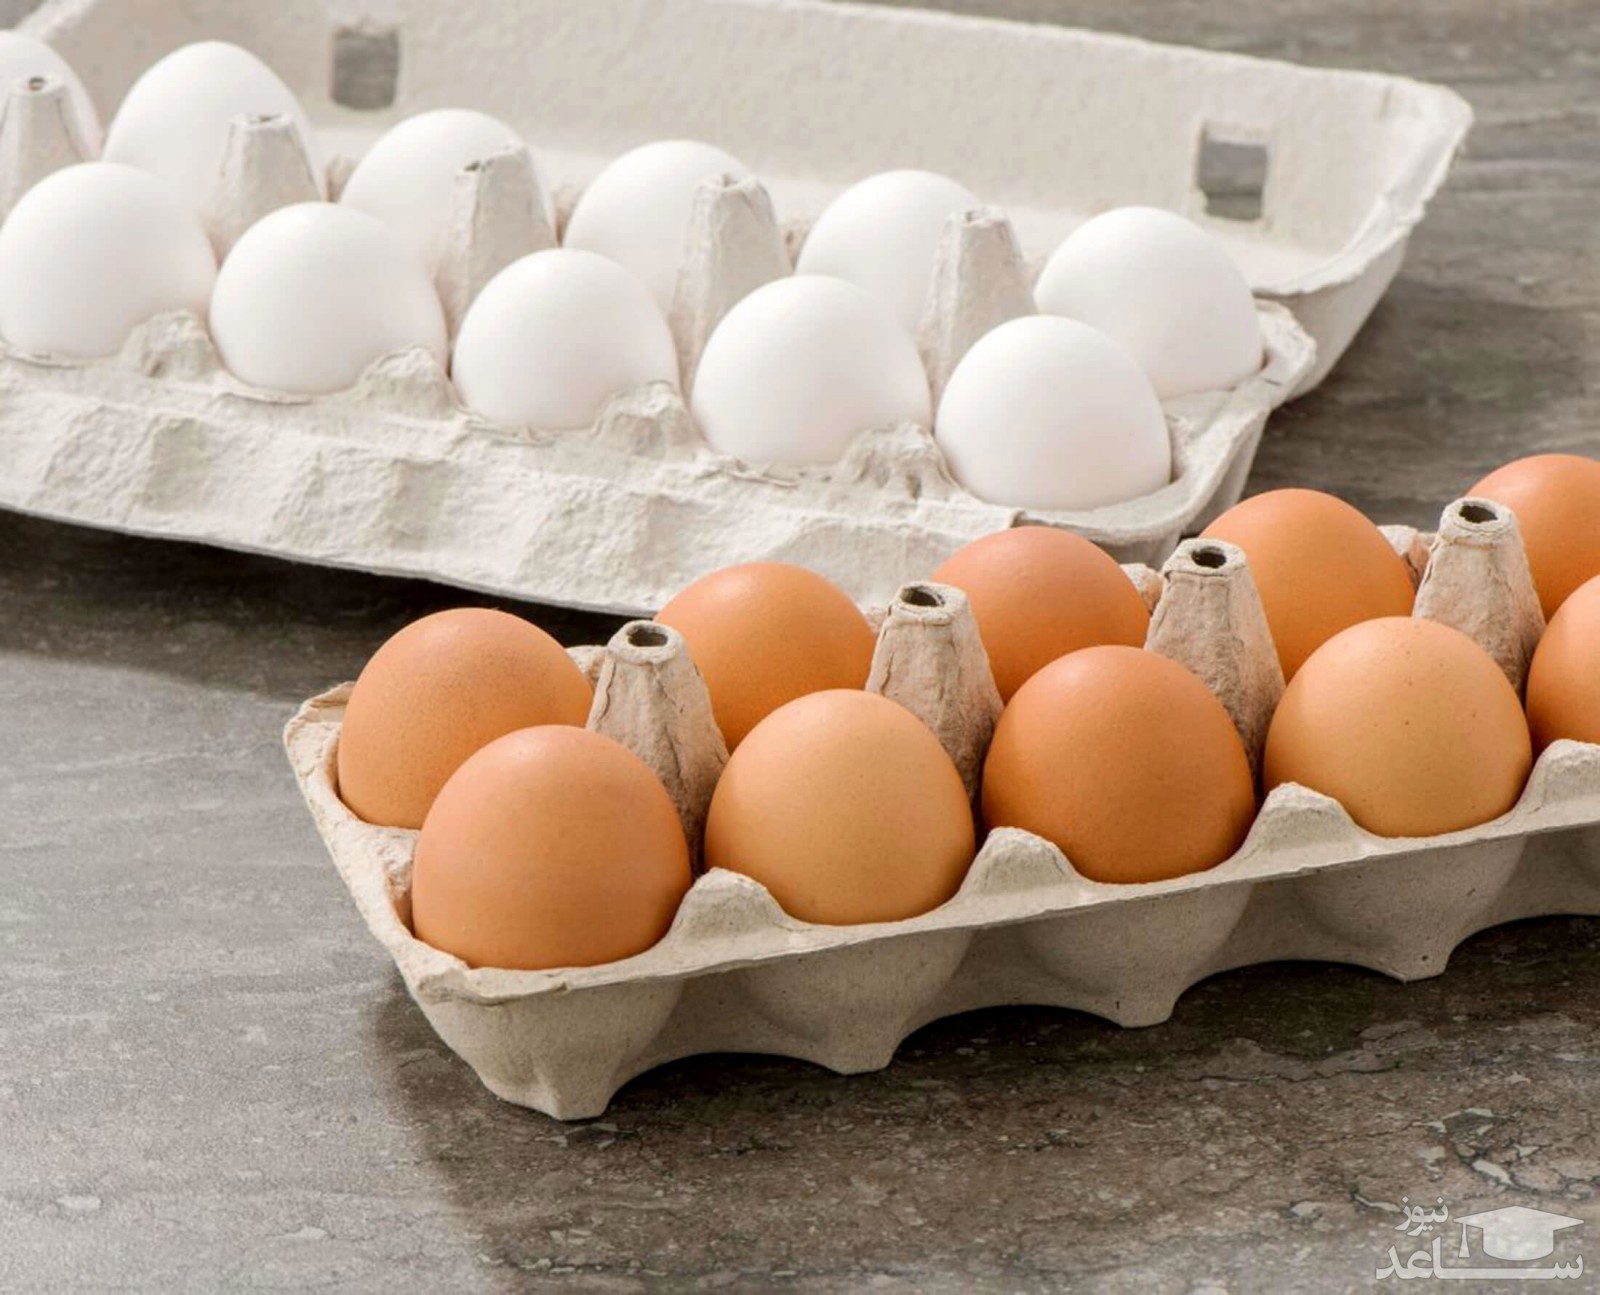 هشدار به کسانی که تخم مرغ هایشان را دریخچال نگهداری می کنند